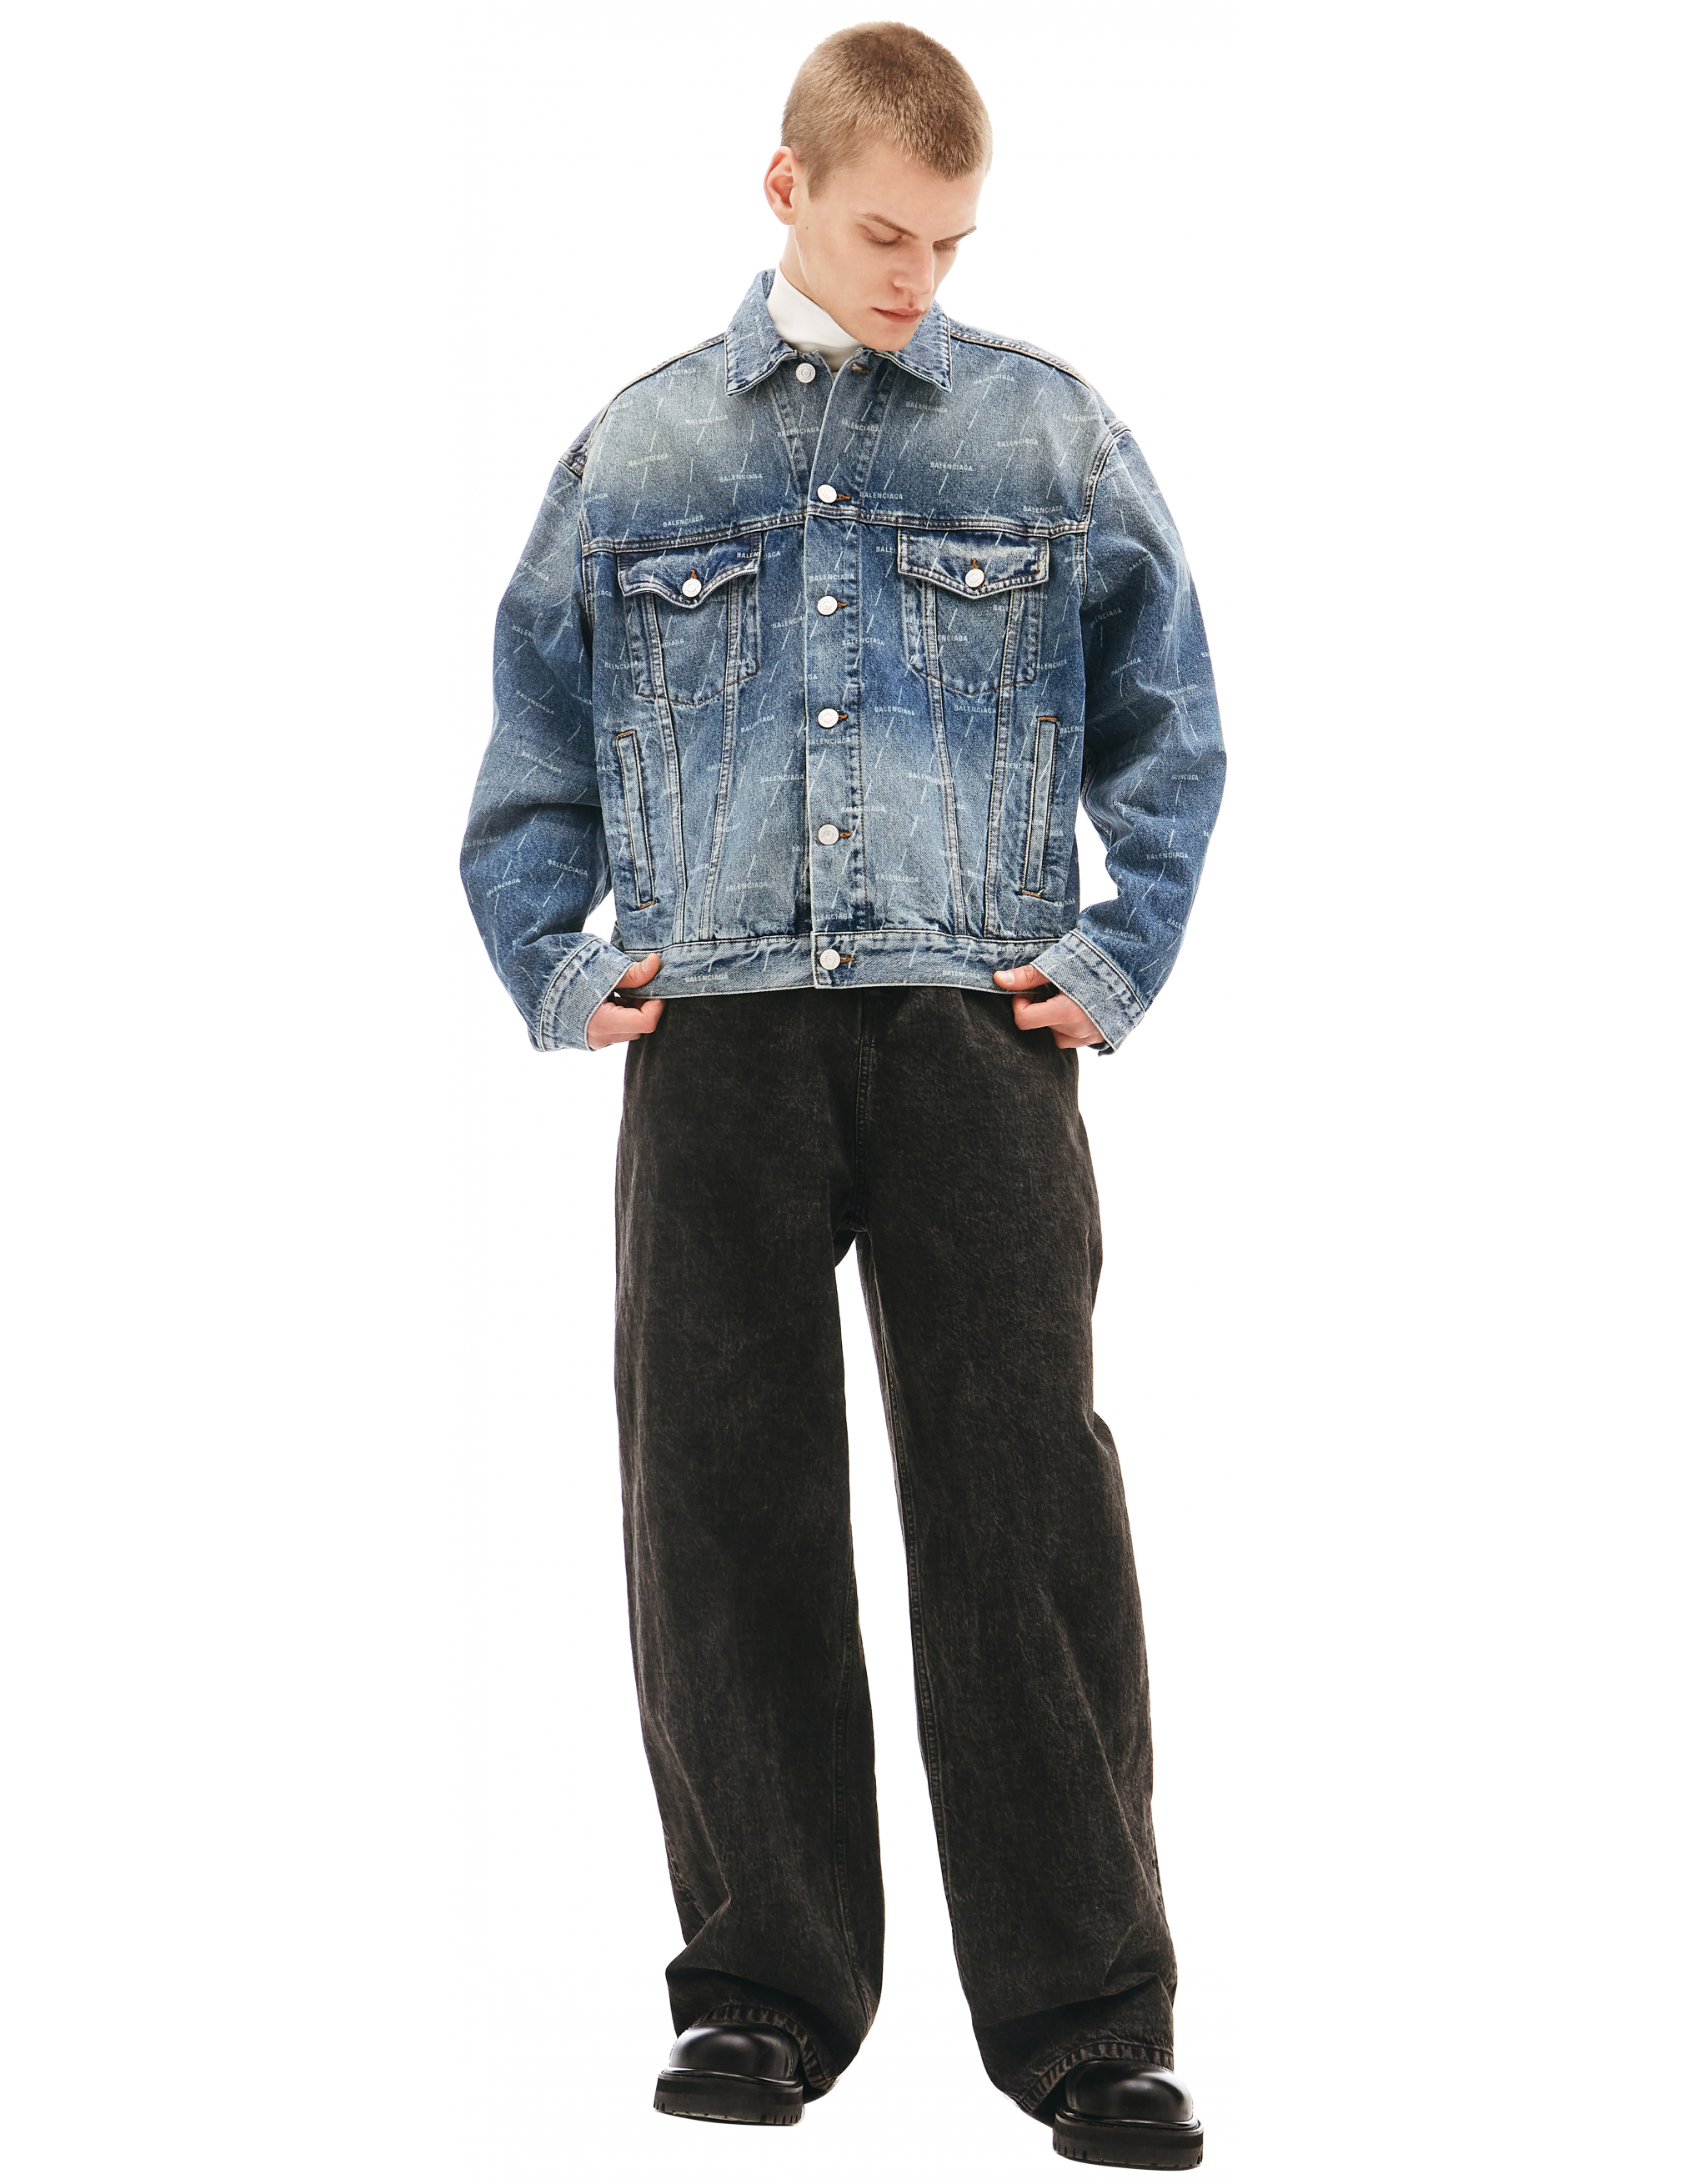 Джинсовая куртка с монопринтом Balenciaga 620731/TJW53/2340, размер 52;50;48